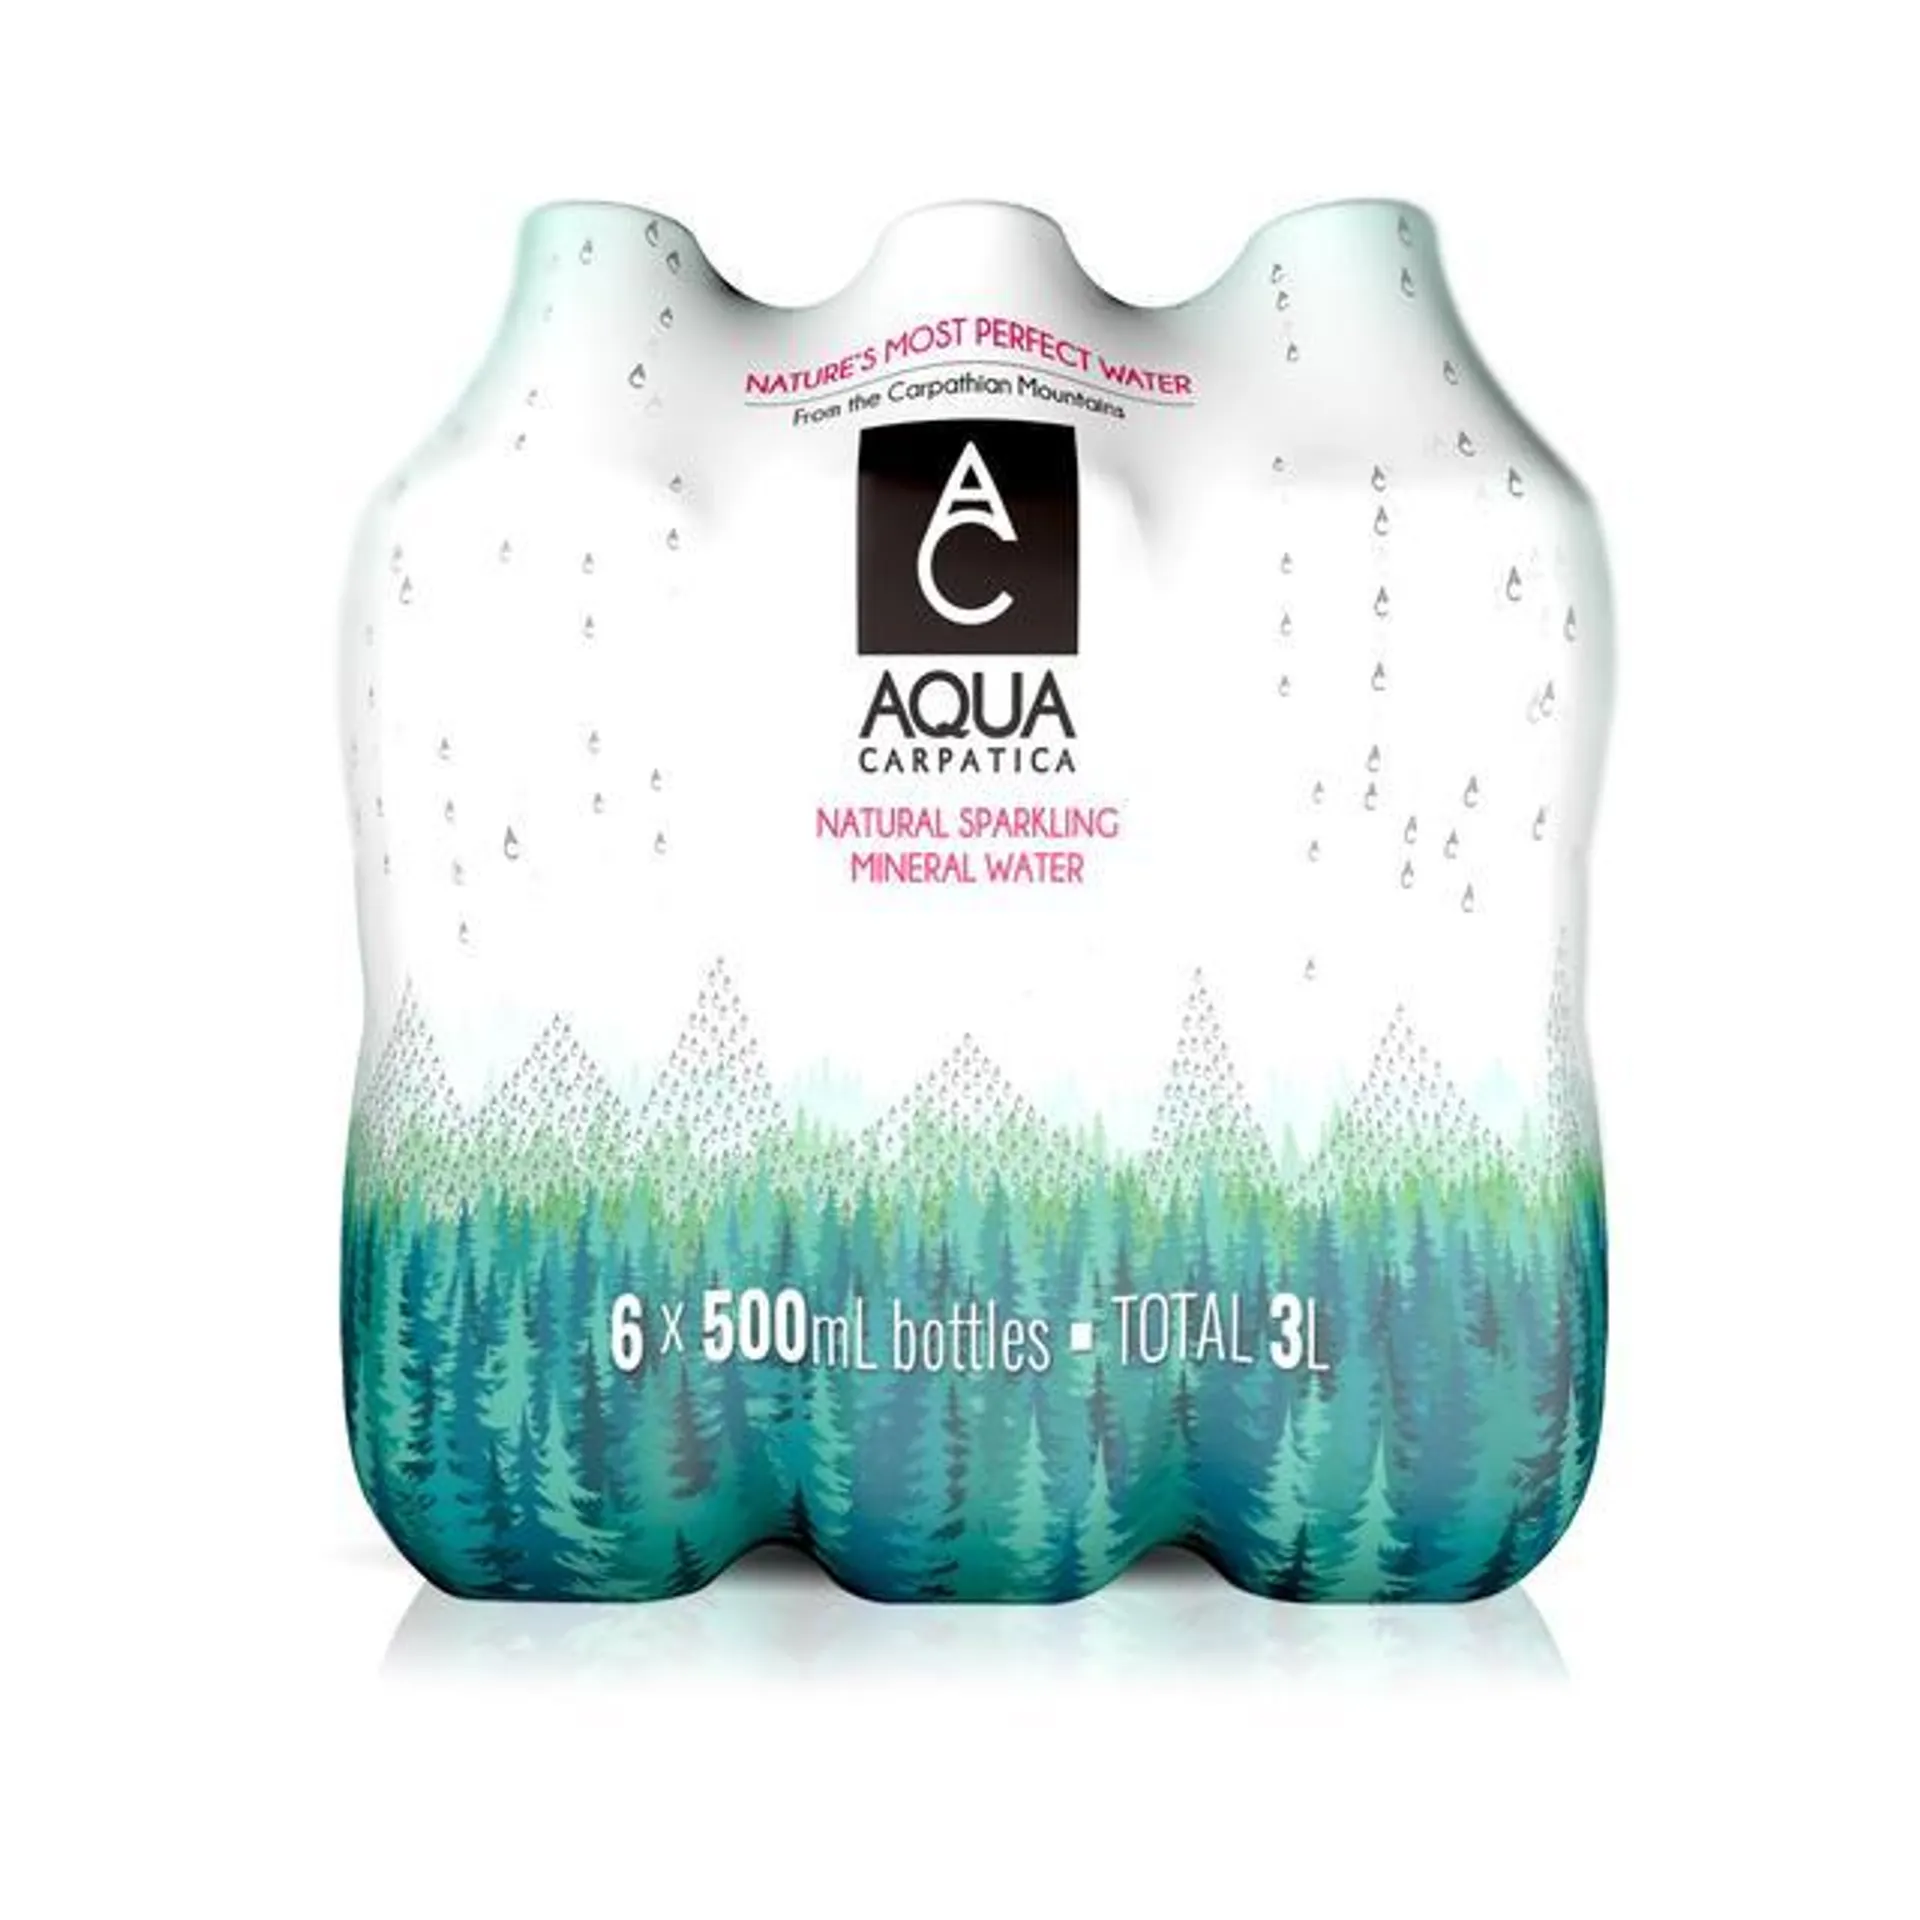 AQUA Carpatica Naturally Sparkling Natural Mineral Water Nitrates Free